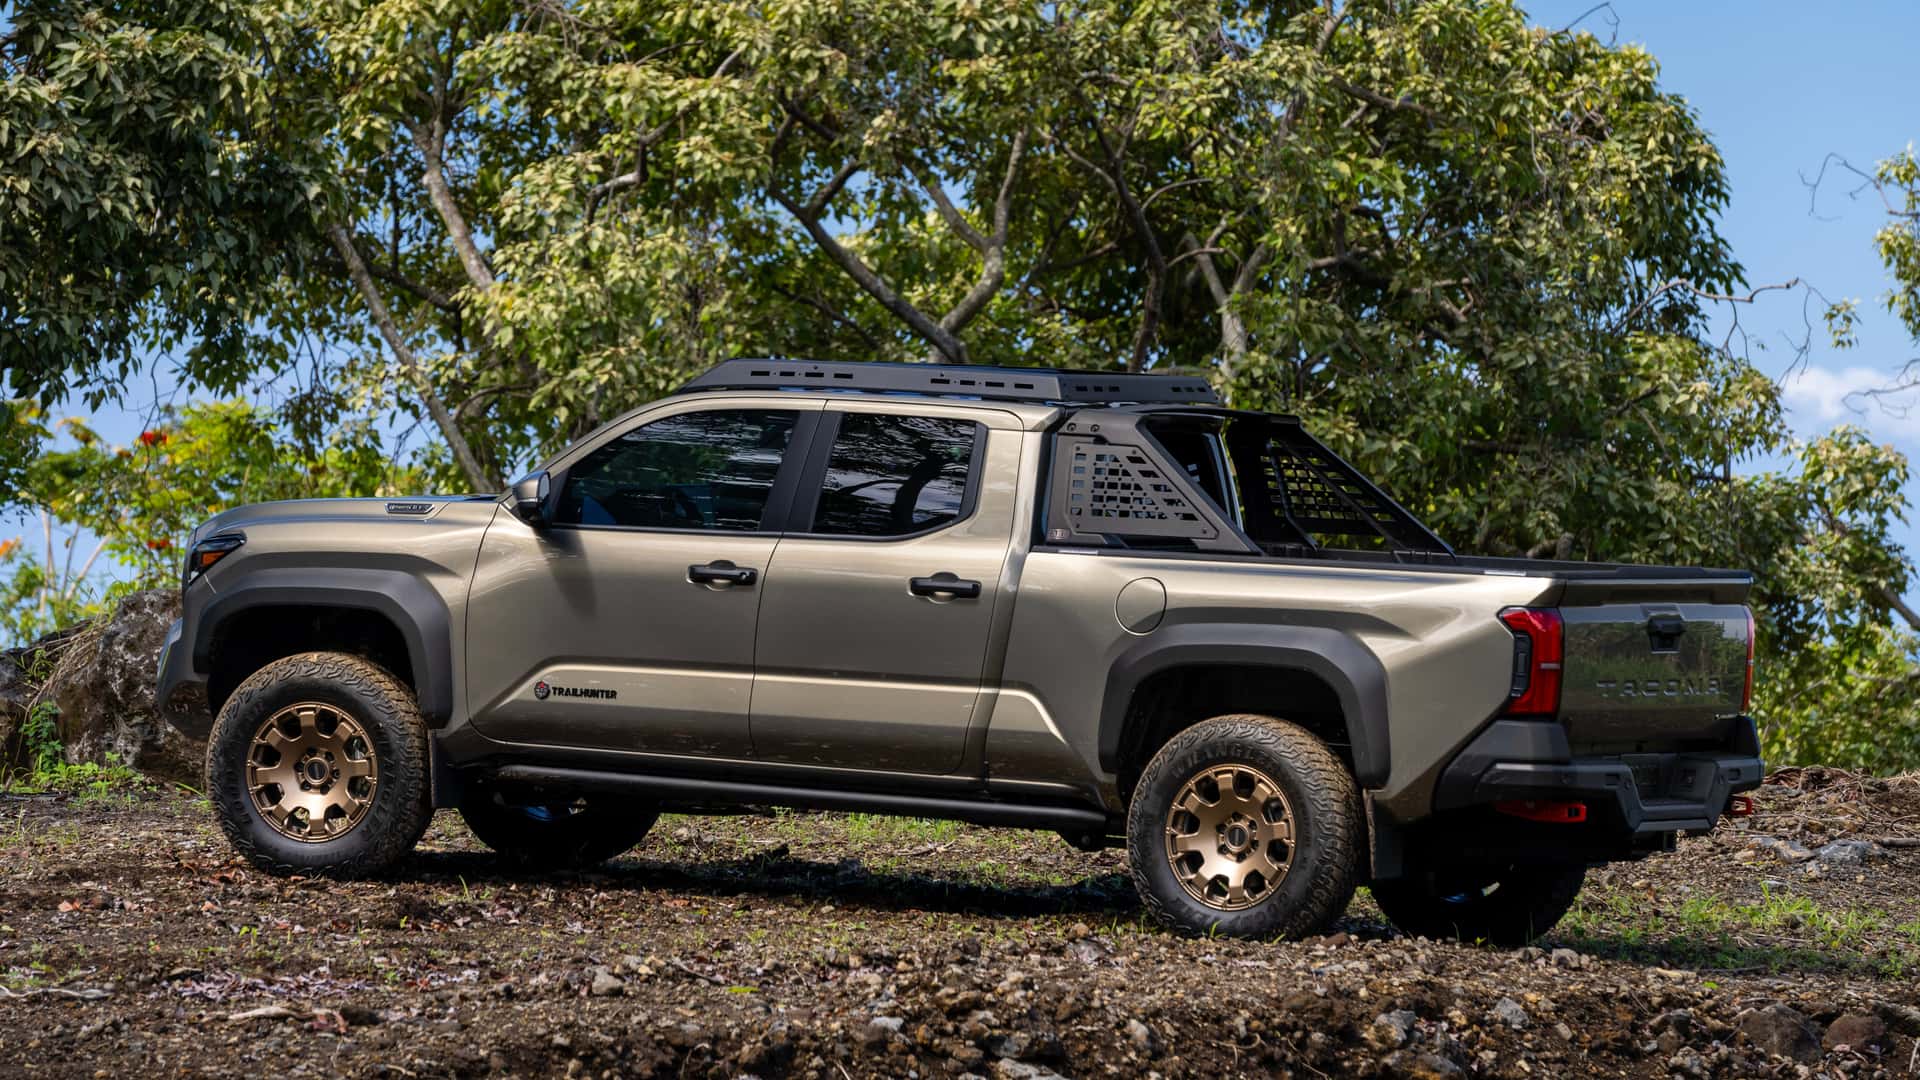 Toyota официально представила обновленный пикап Tacoma